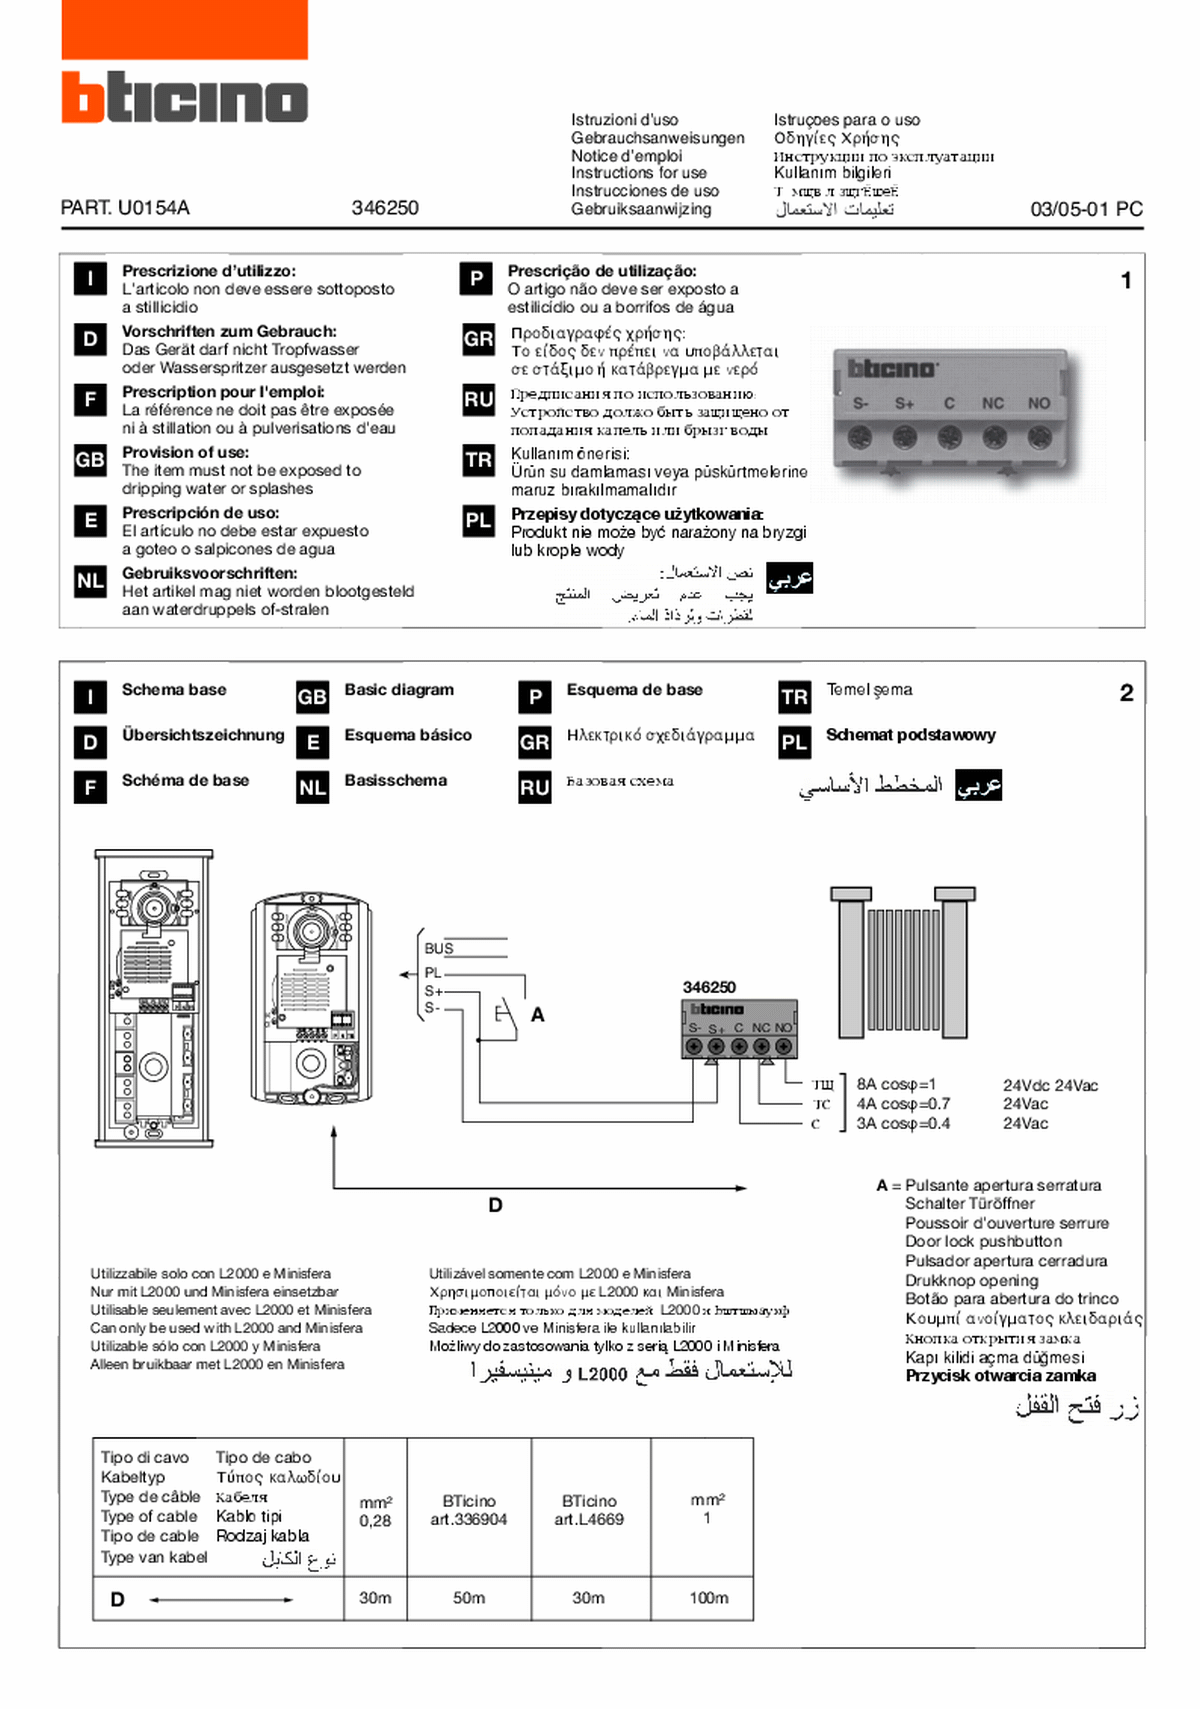 Fabrieksschema DZ-Rel instruction sheet